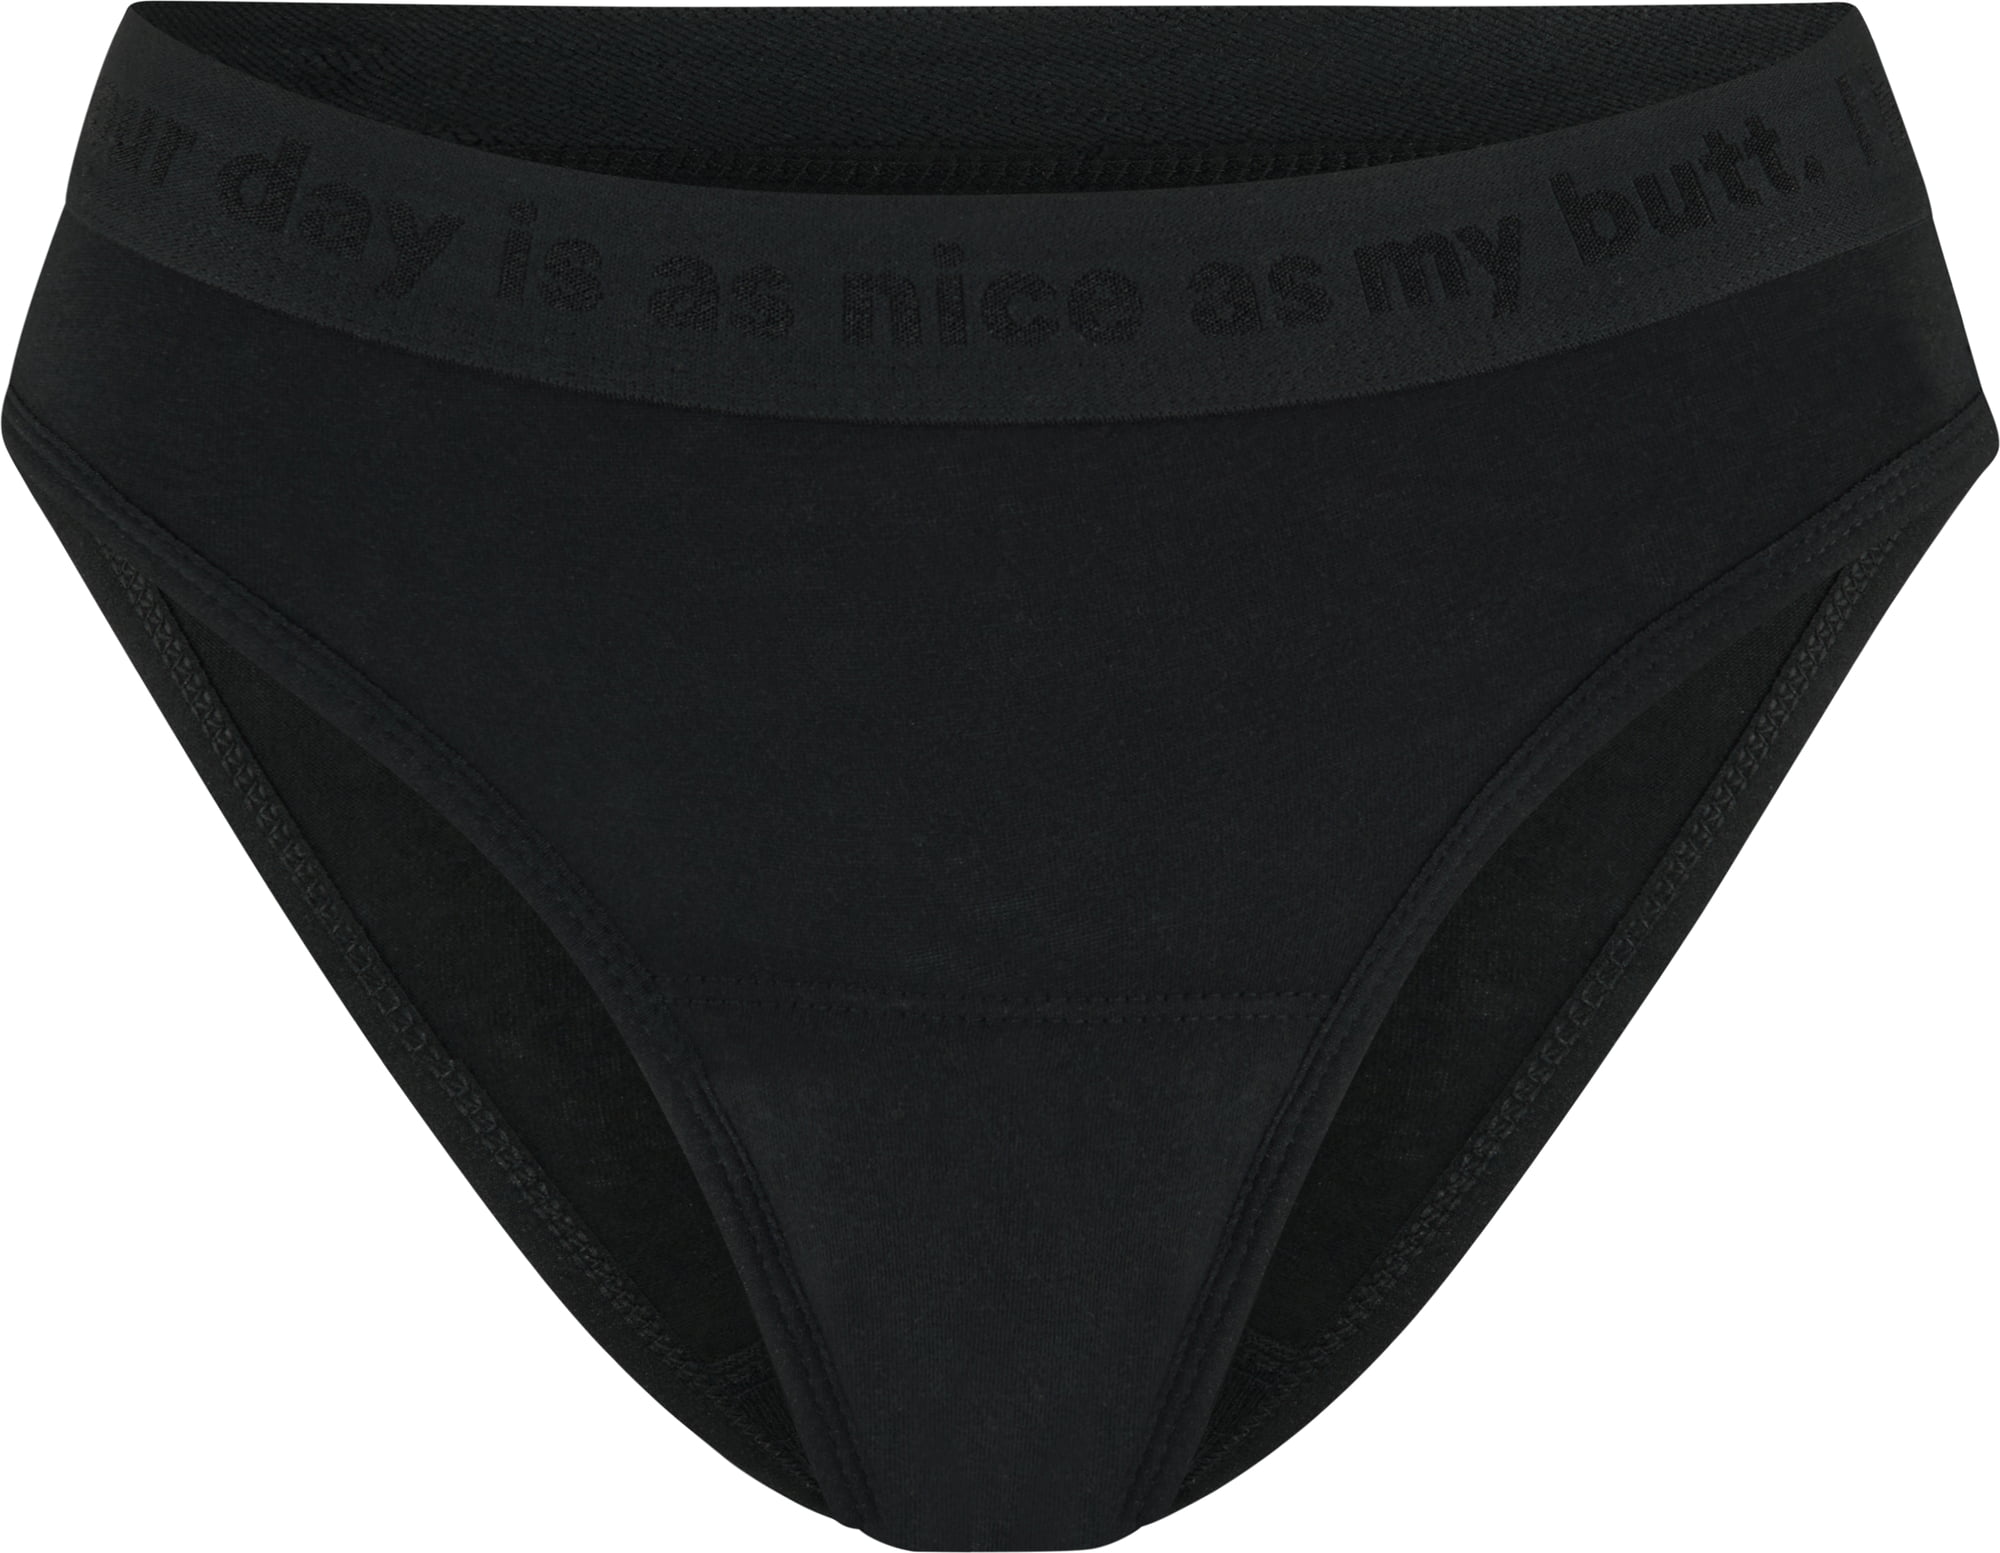 Period Underwear - Briefs Basic Black Extra Strong 38